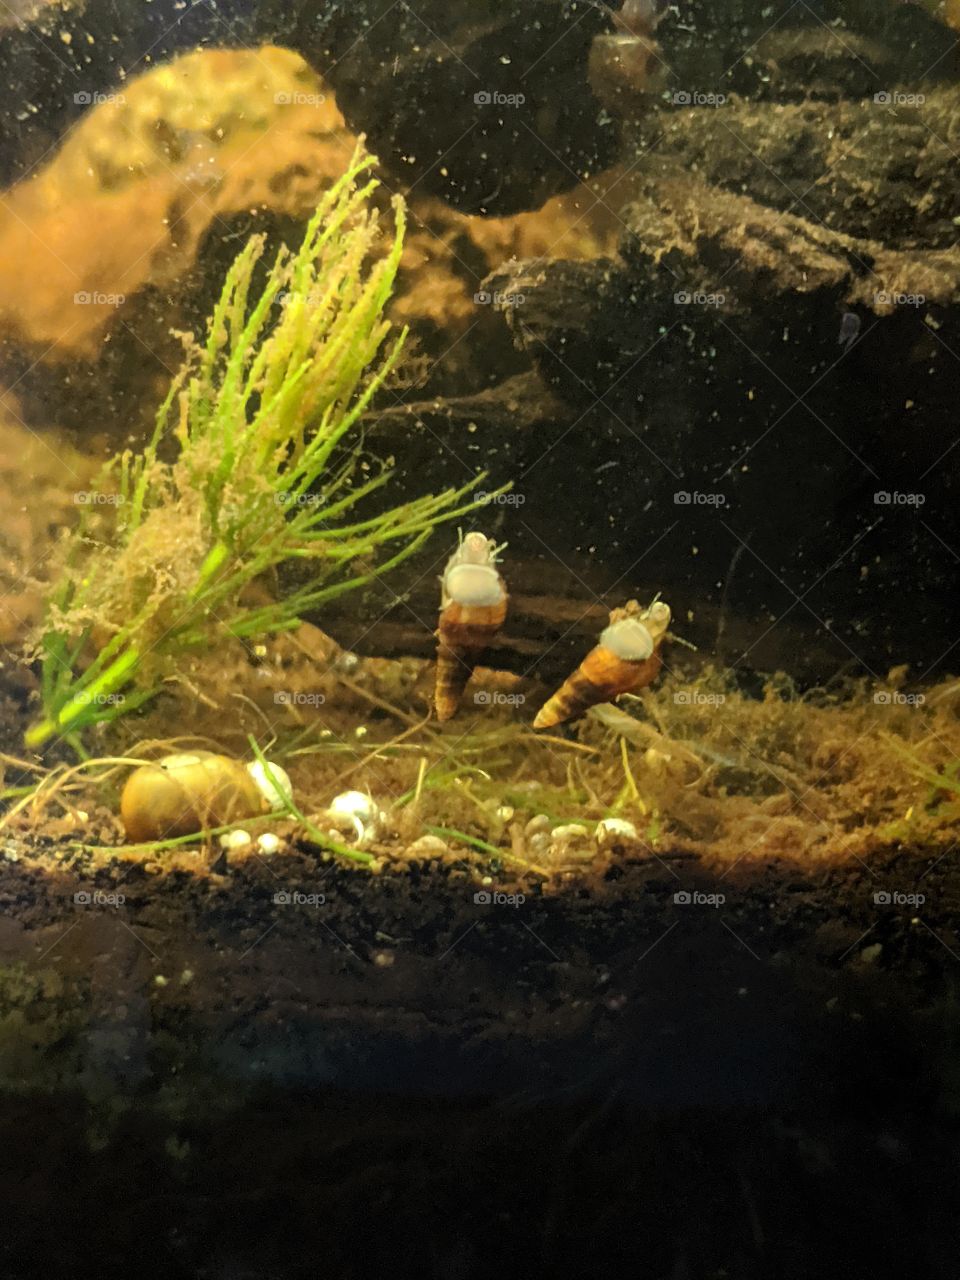 Tiny Snails